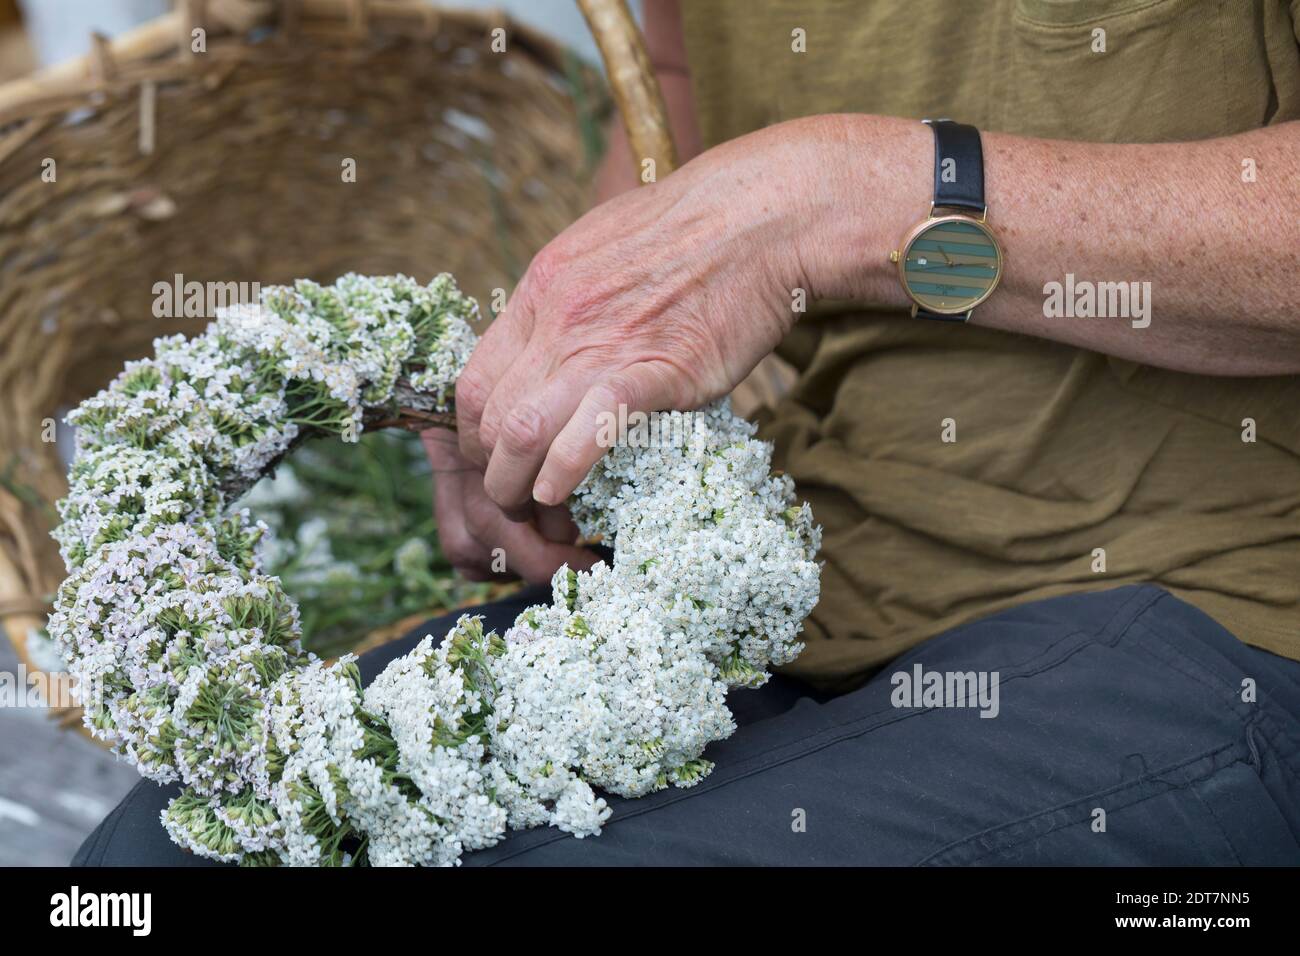 Schafgarbe, Milfoil (Achillea millefolium), selbstgebundener Schafgarbe-Kranz, Deutschland Stockfoto